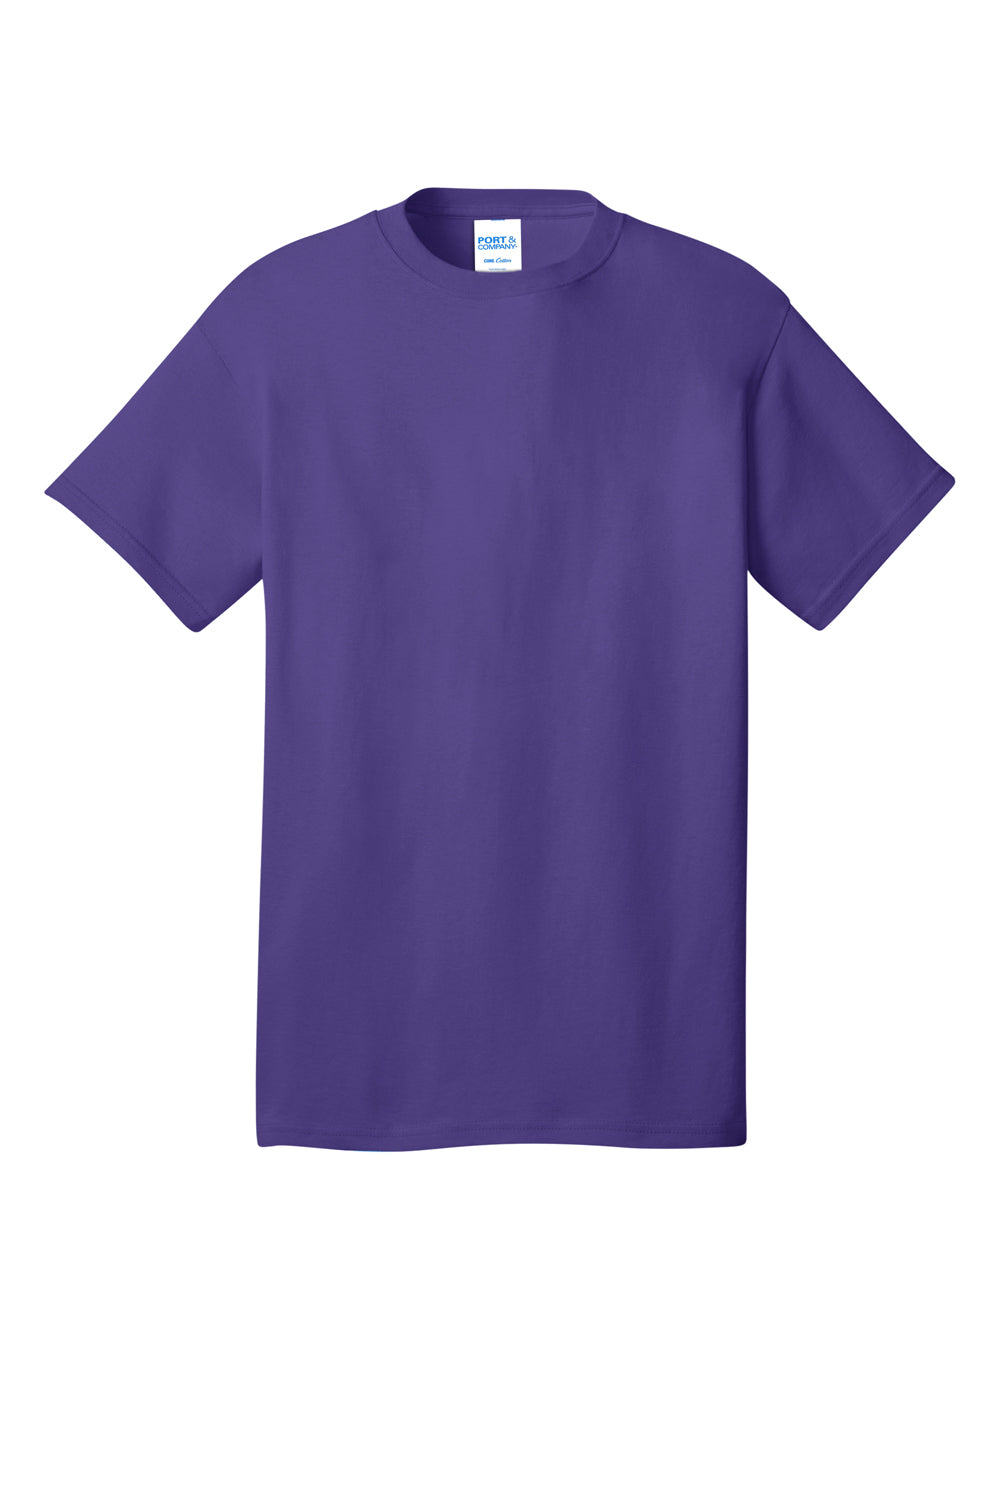 Port & Company PC54DTG Core Cotton DTG Short Sleeve Crewneck T-Shirt Purple Flat Front